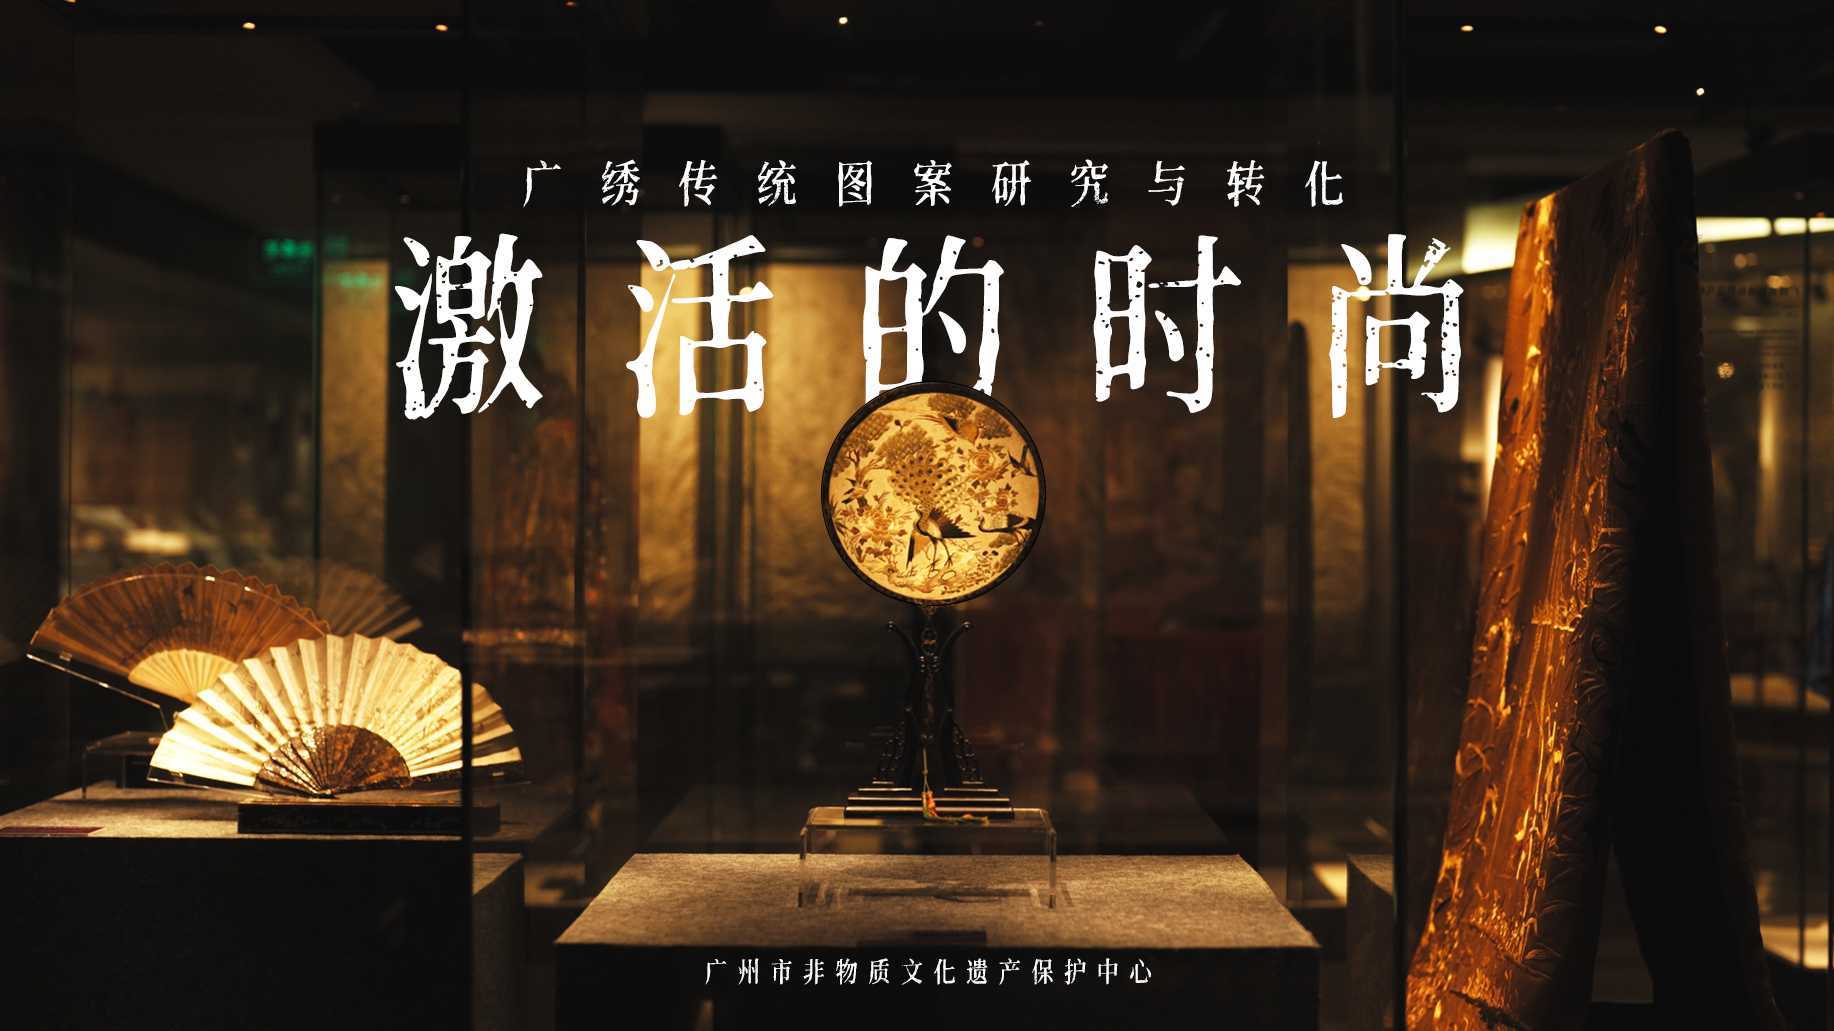 广州非遗保护中心 | 激活的时尚·广绣传统图案研究与转化课题成果